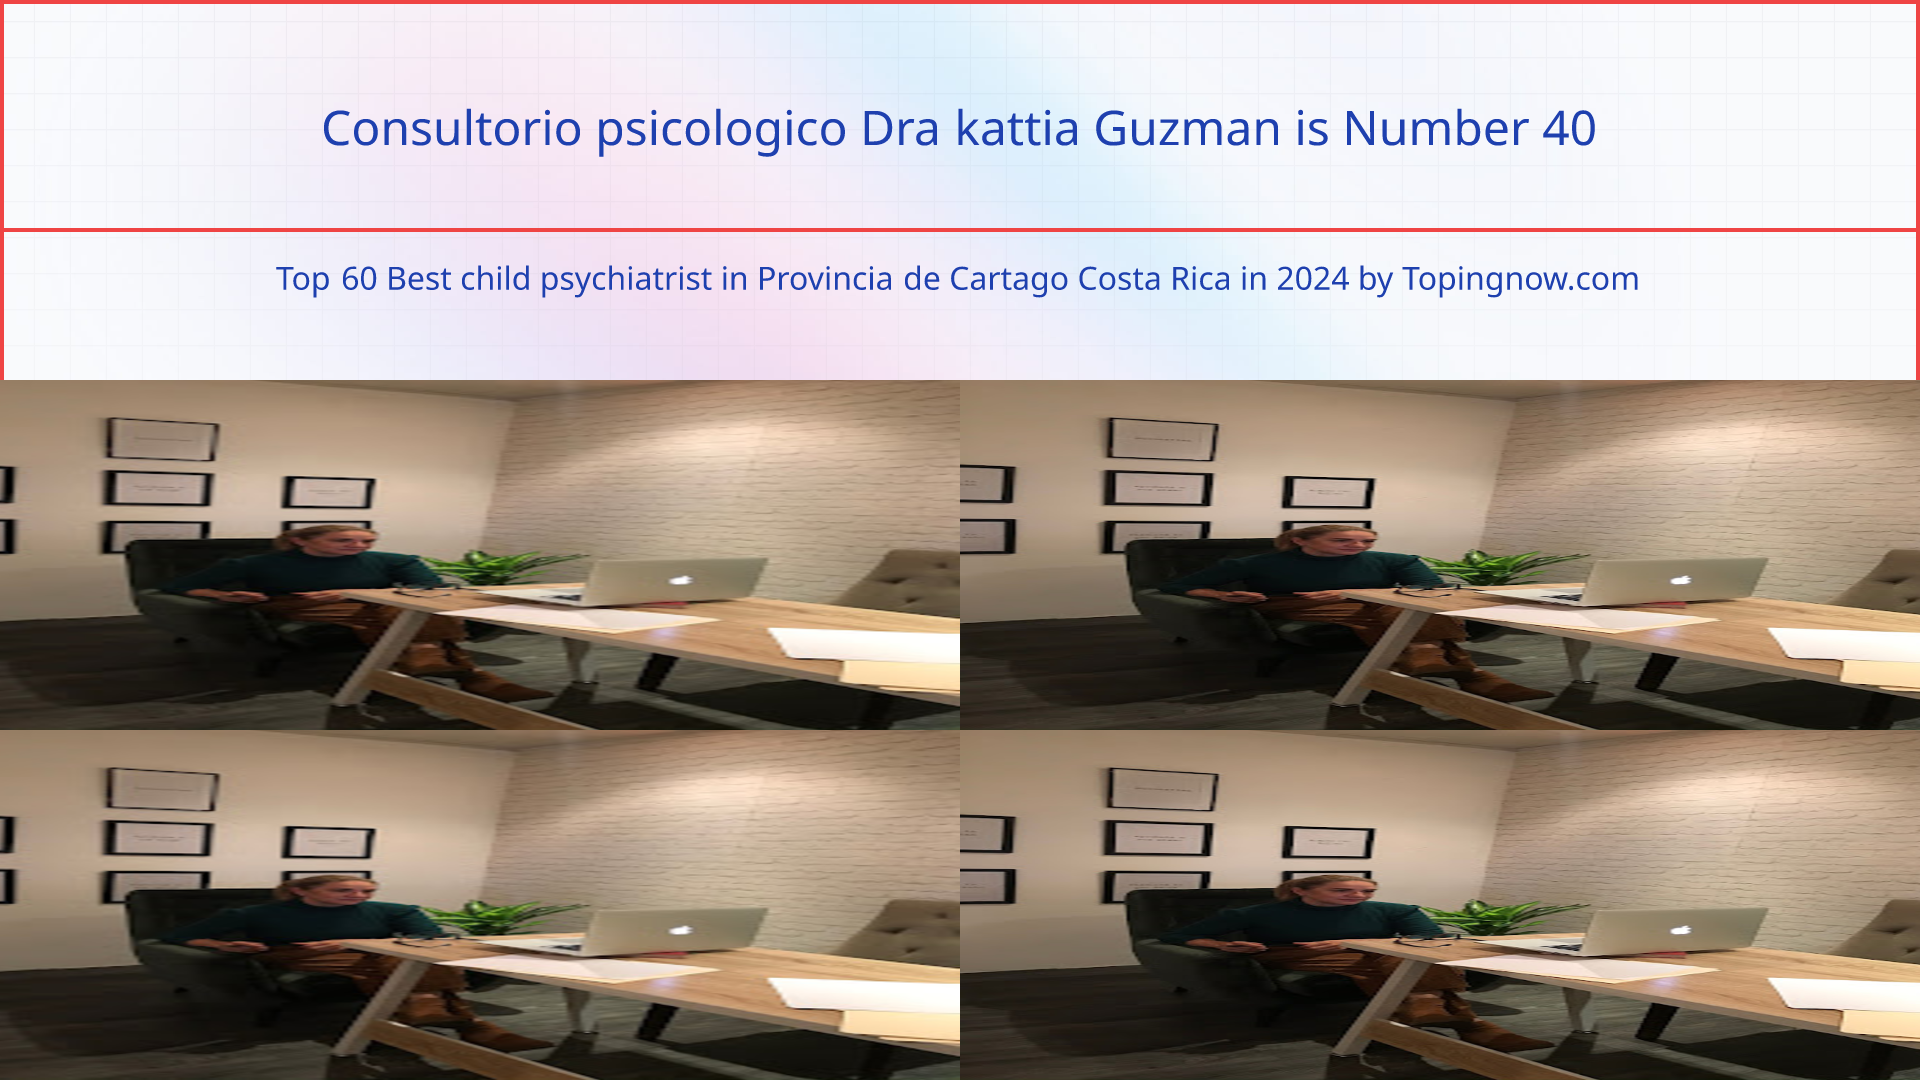 Consultorio psicologico Dra kattia Guzman: Top 60 Best child psychiatrist in Provincia de Cartago Costa Rica in 2024